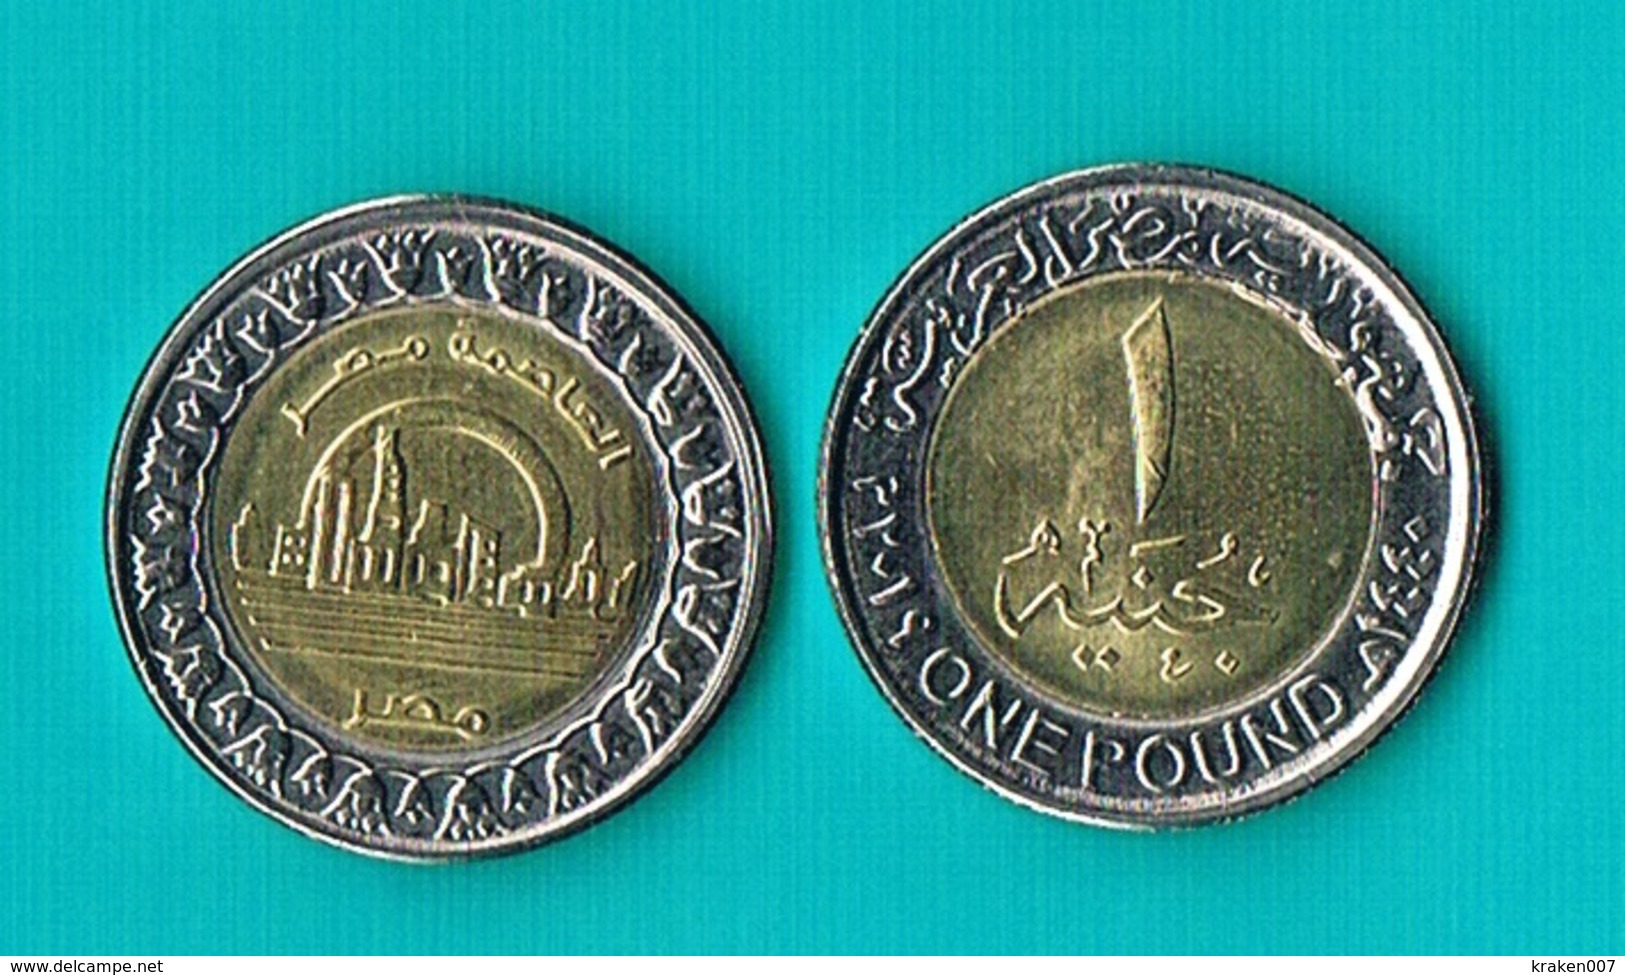 Egypt 1 Pound 2019 - Bimetal (2) - Egypt